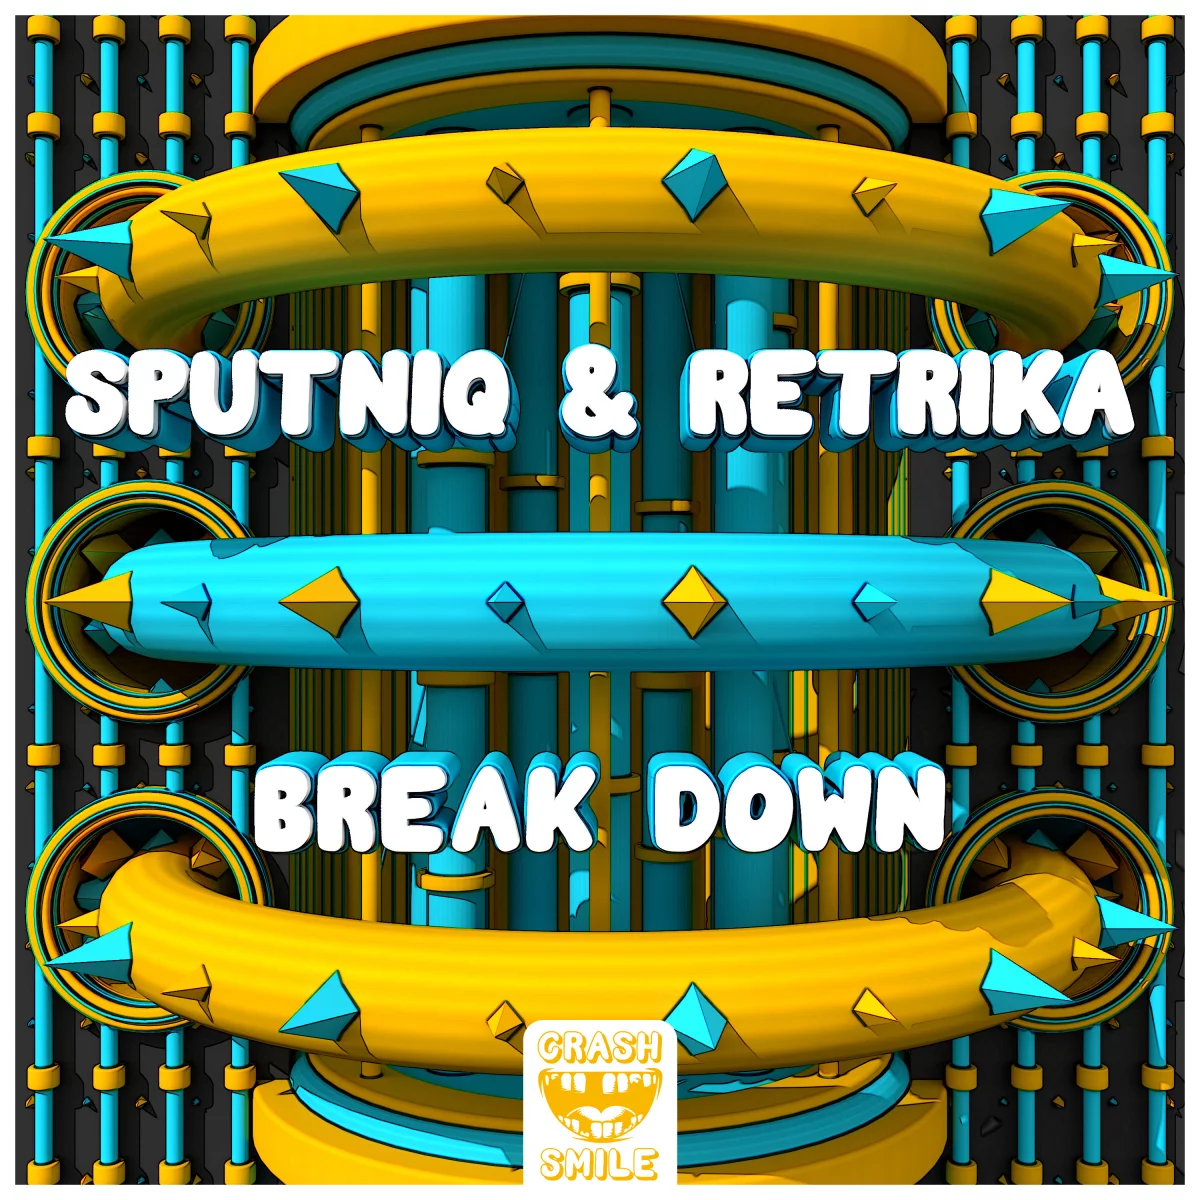 Break Down - Sputniq⁠ & Retrika⁠ 